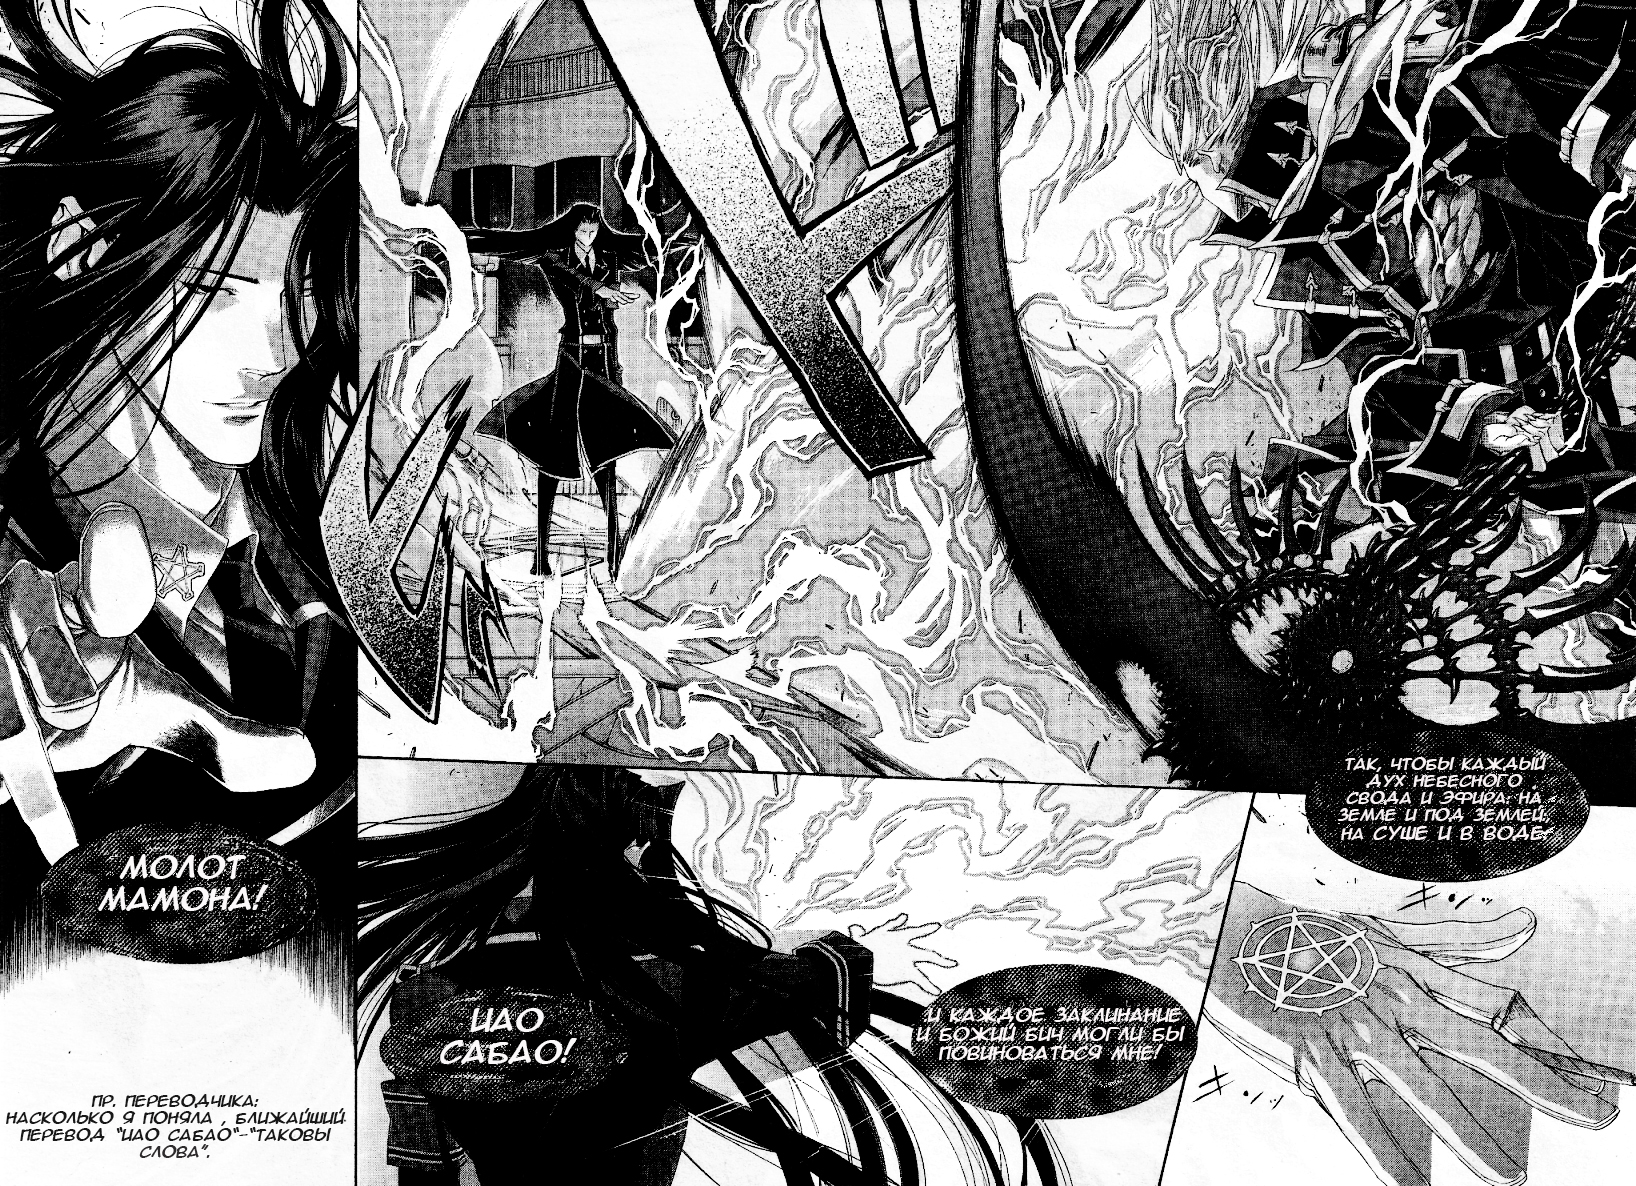 Манга кровь и бабочки. Триединства Каин. Кровь триединства. Trinity Blood Manga. Кровь триединства Манга.